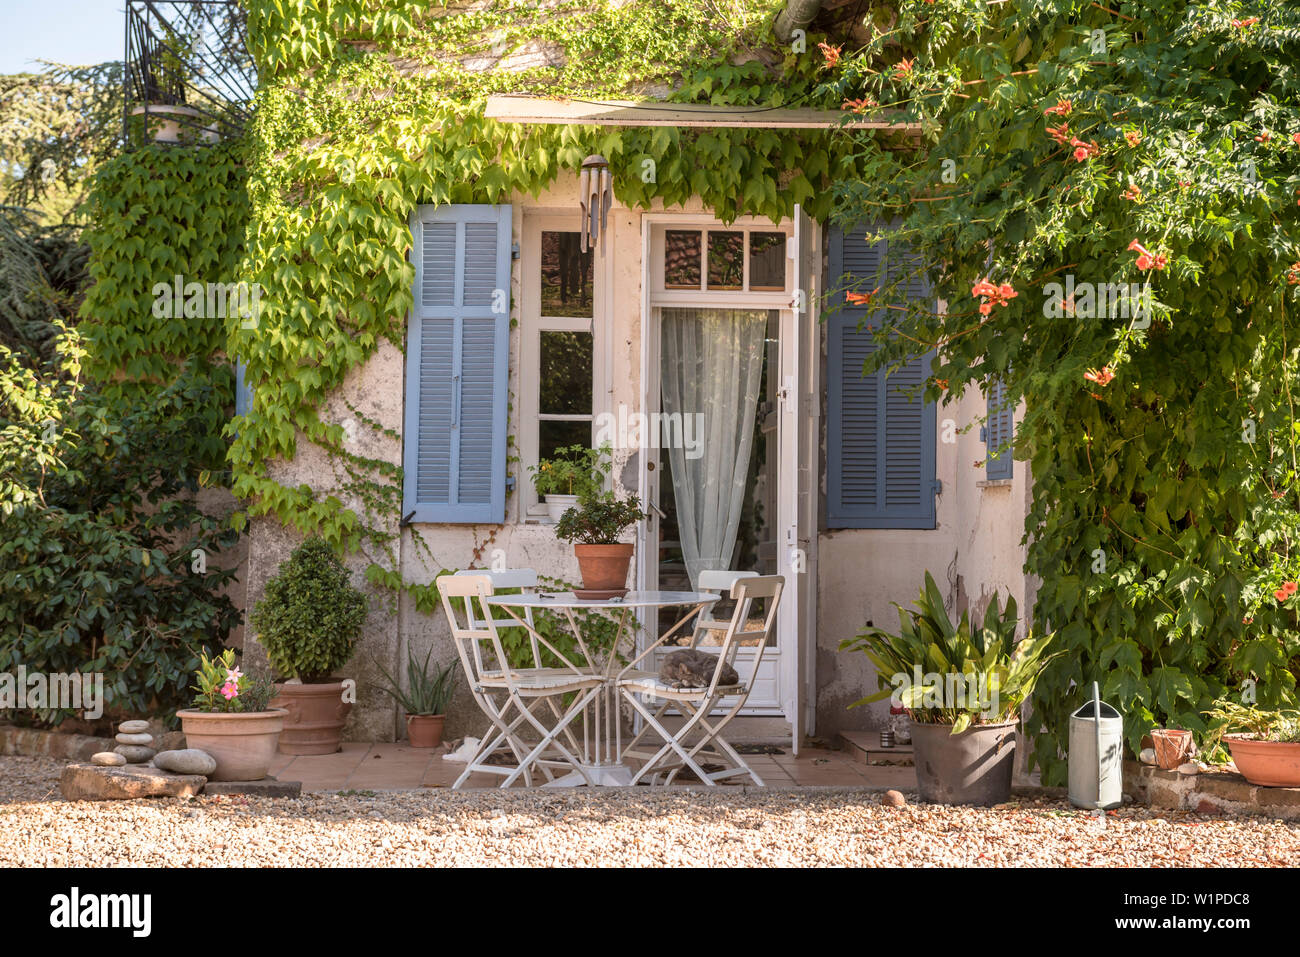 Haus und Garten in süd Frankreich, Sommer, La Bouverie, French Riviera, Cote d'Azur, Frankreich Stockfoto